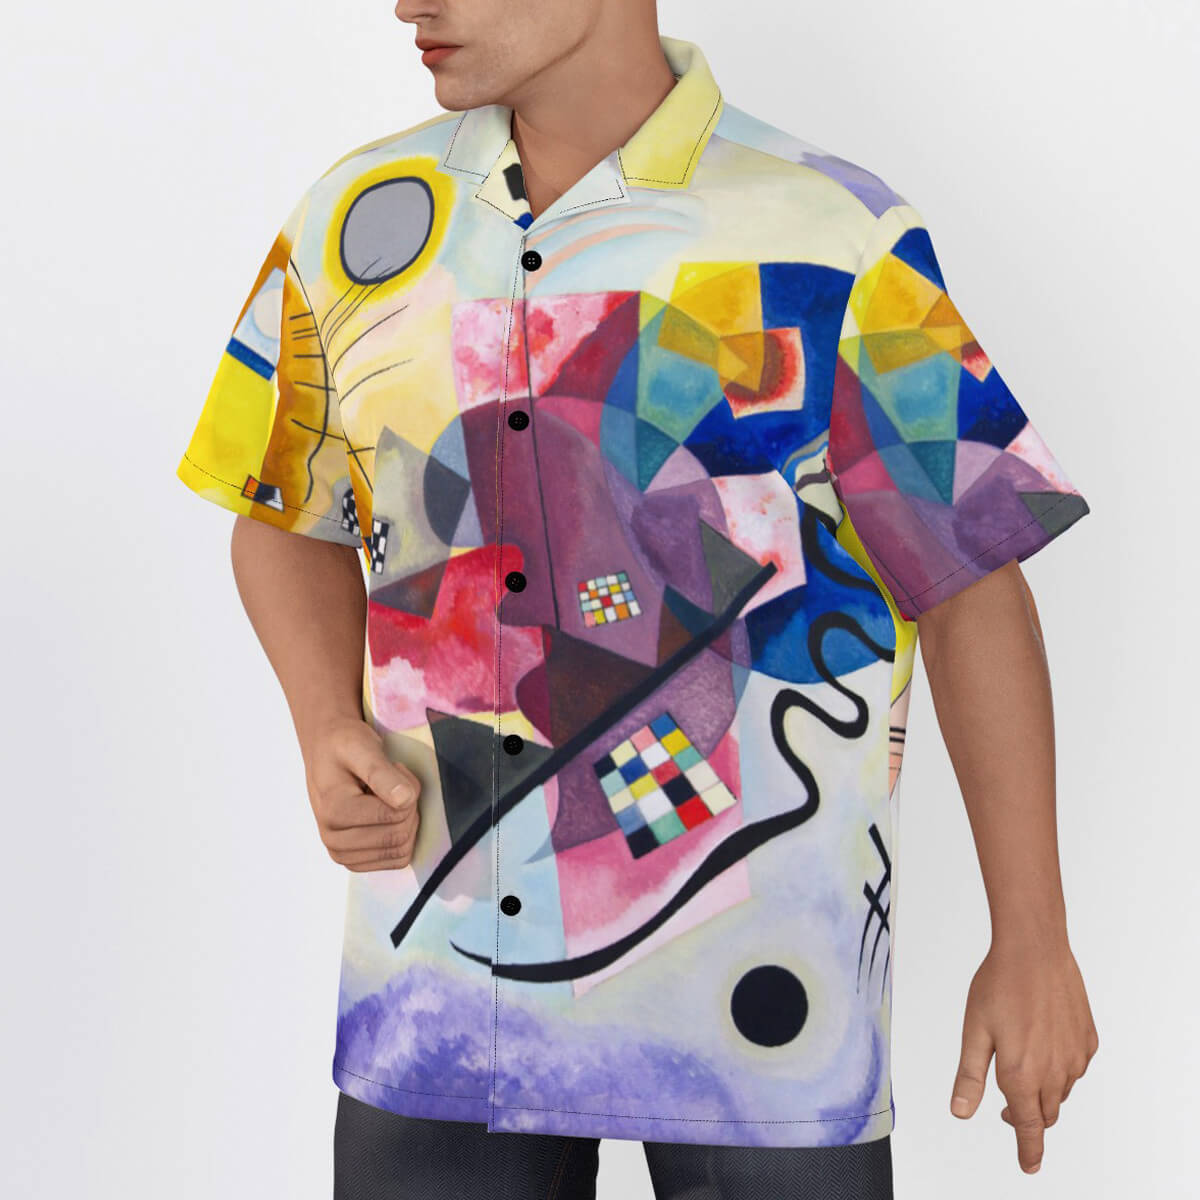 Abstract art shirt for men